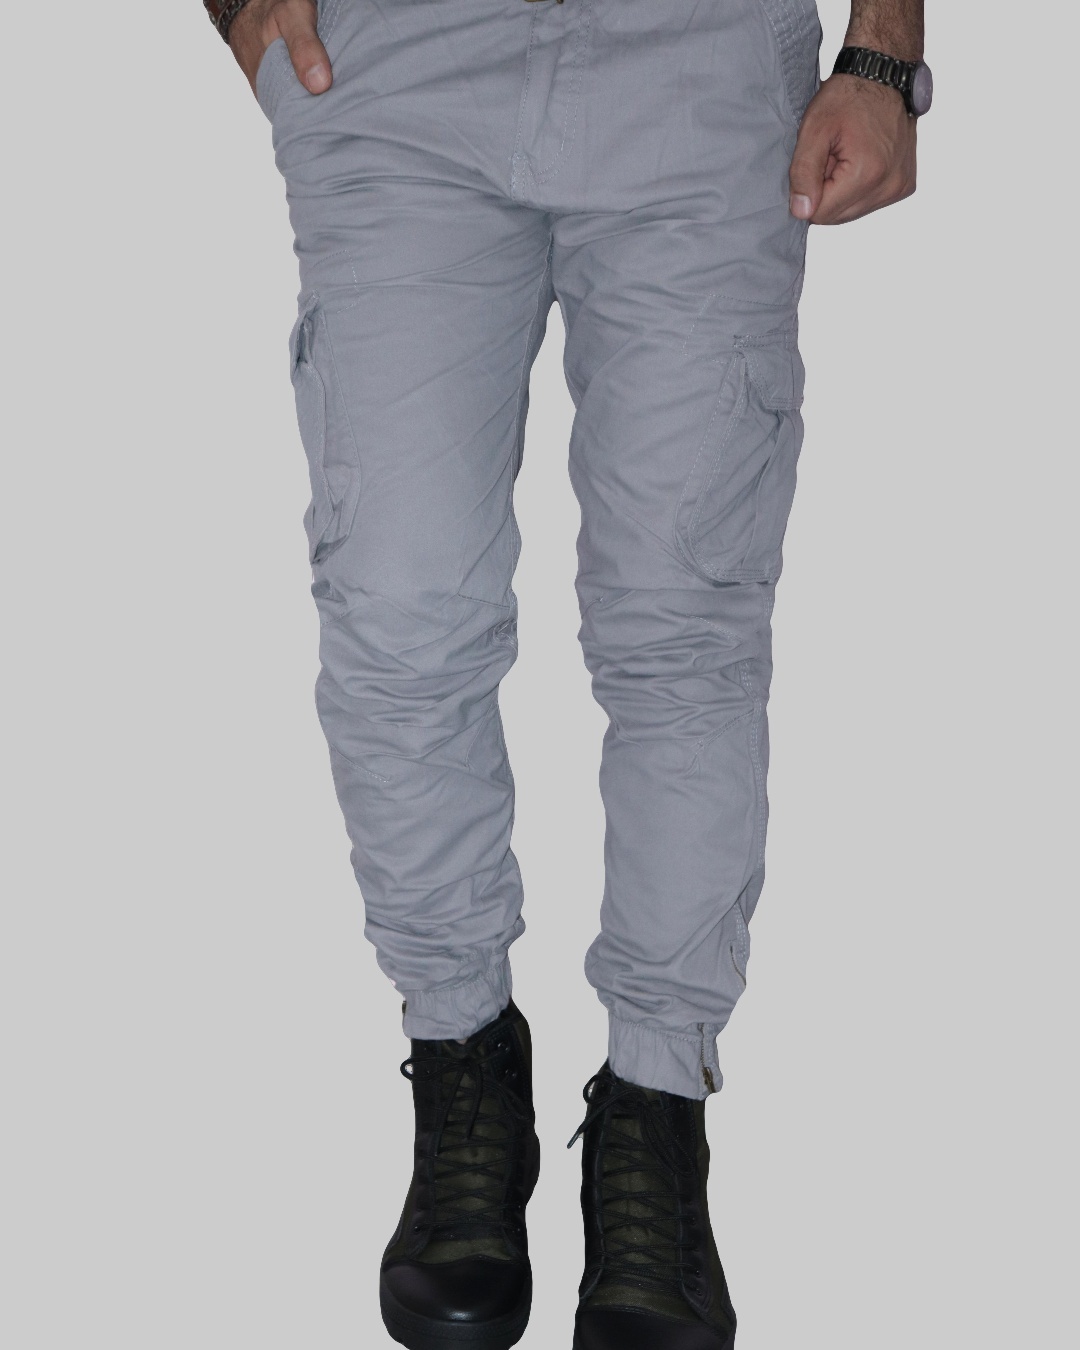 Buy Men's Grey Cargo Pants for Men Grey Online at Bewakoof